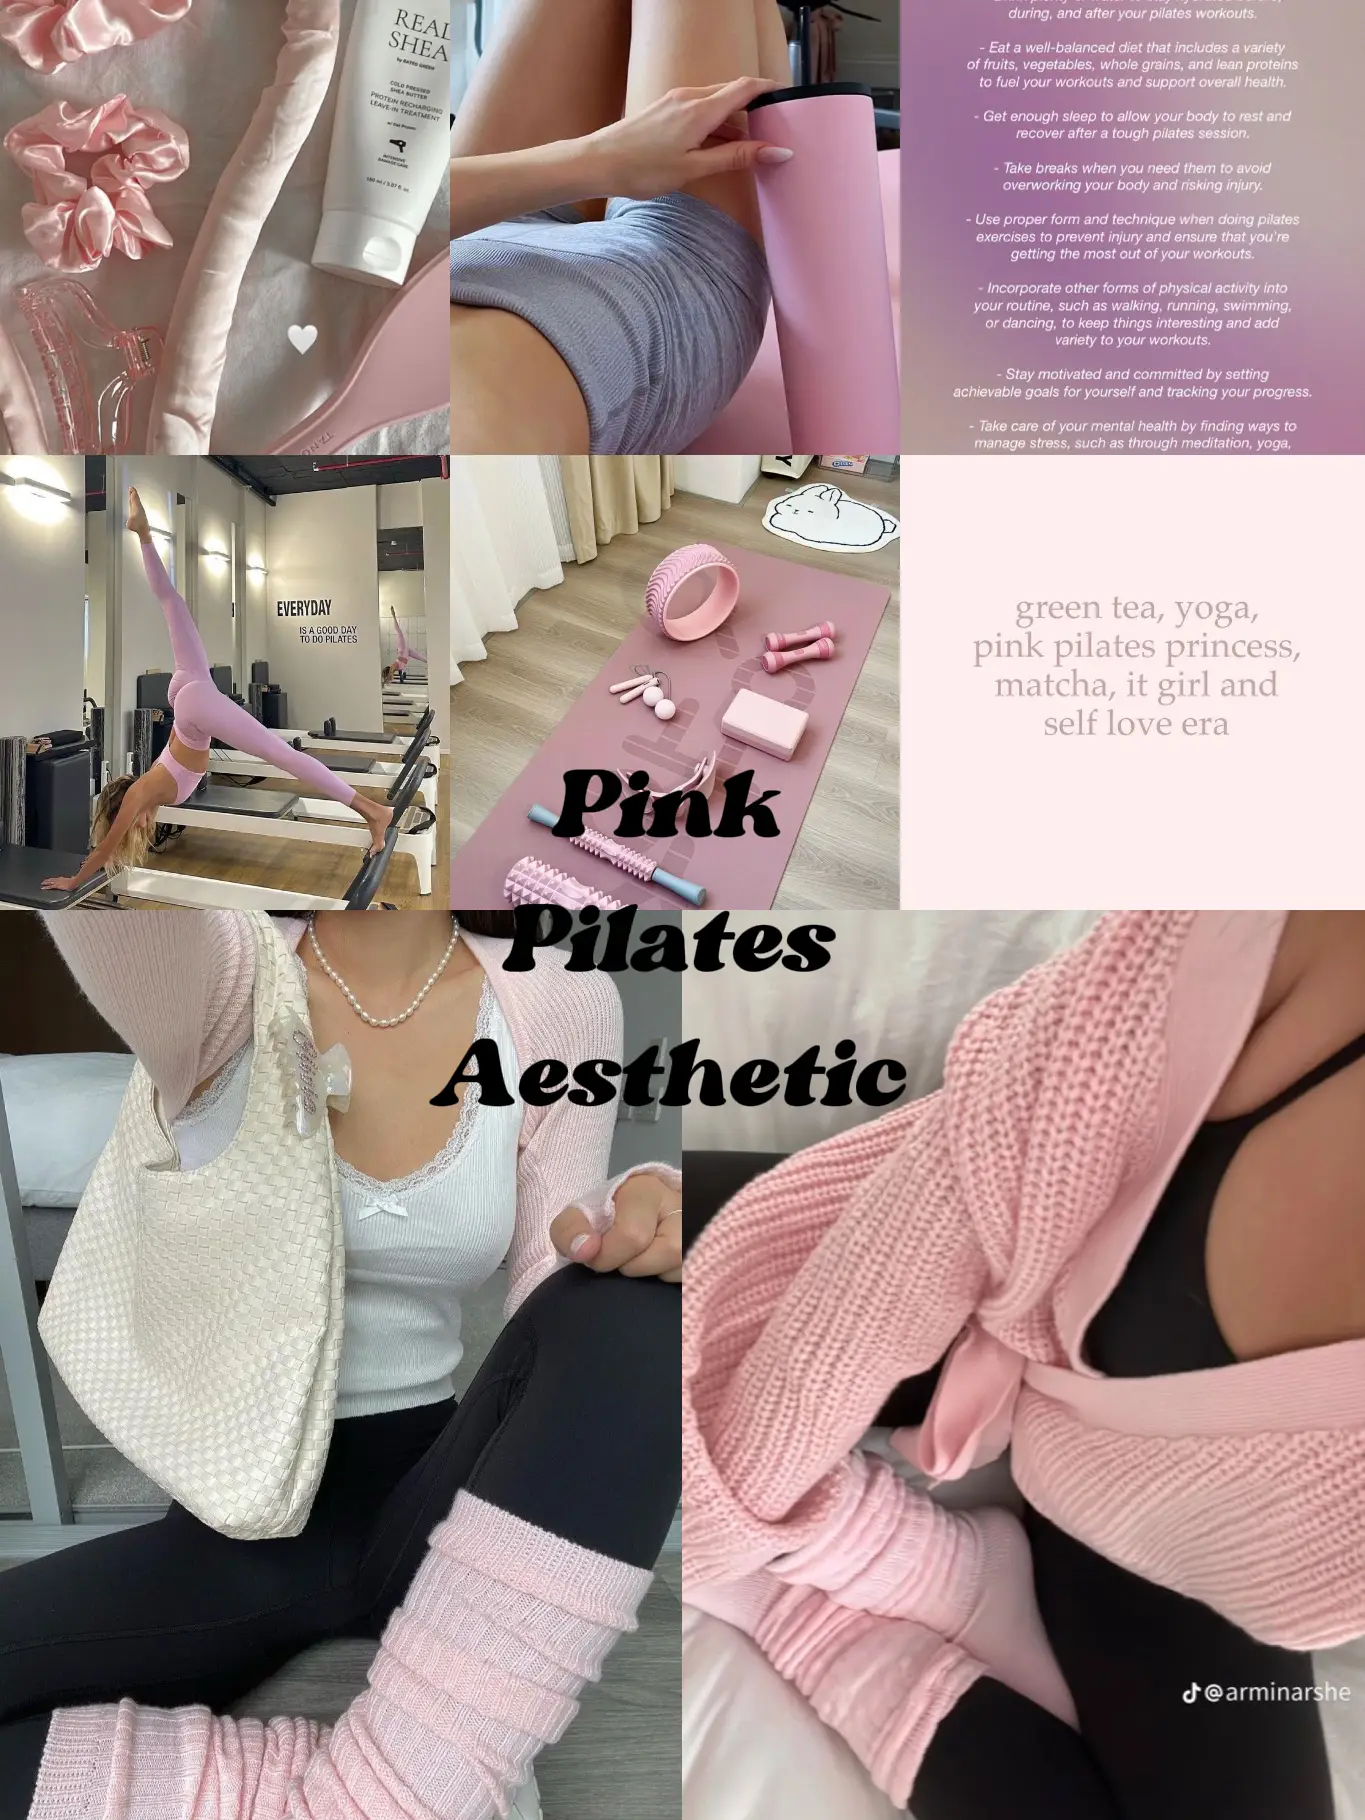 Pink Pilates Princess Gym Look 🎀